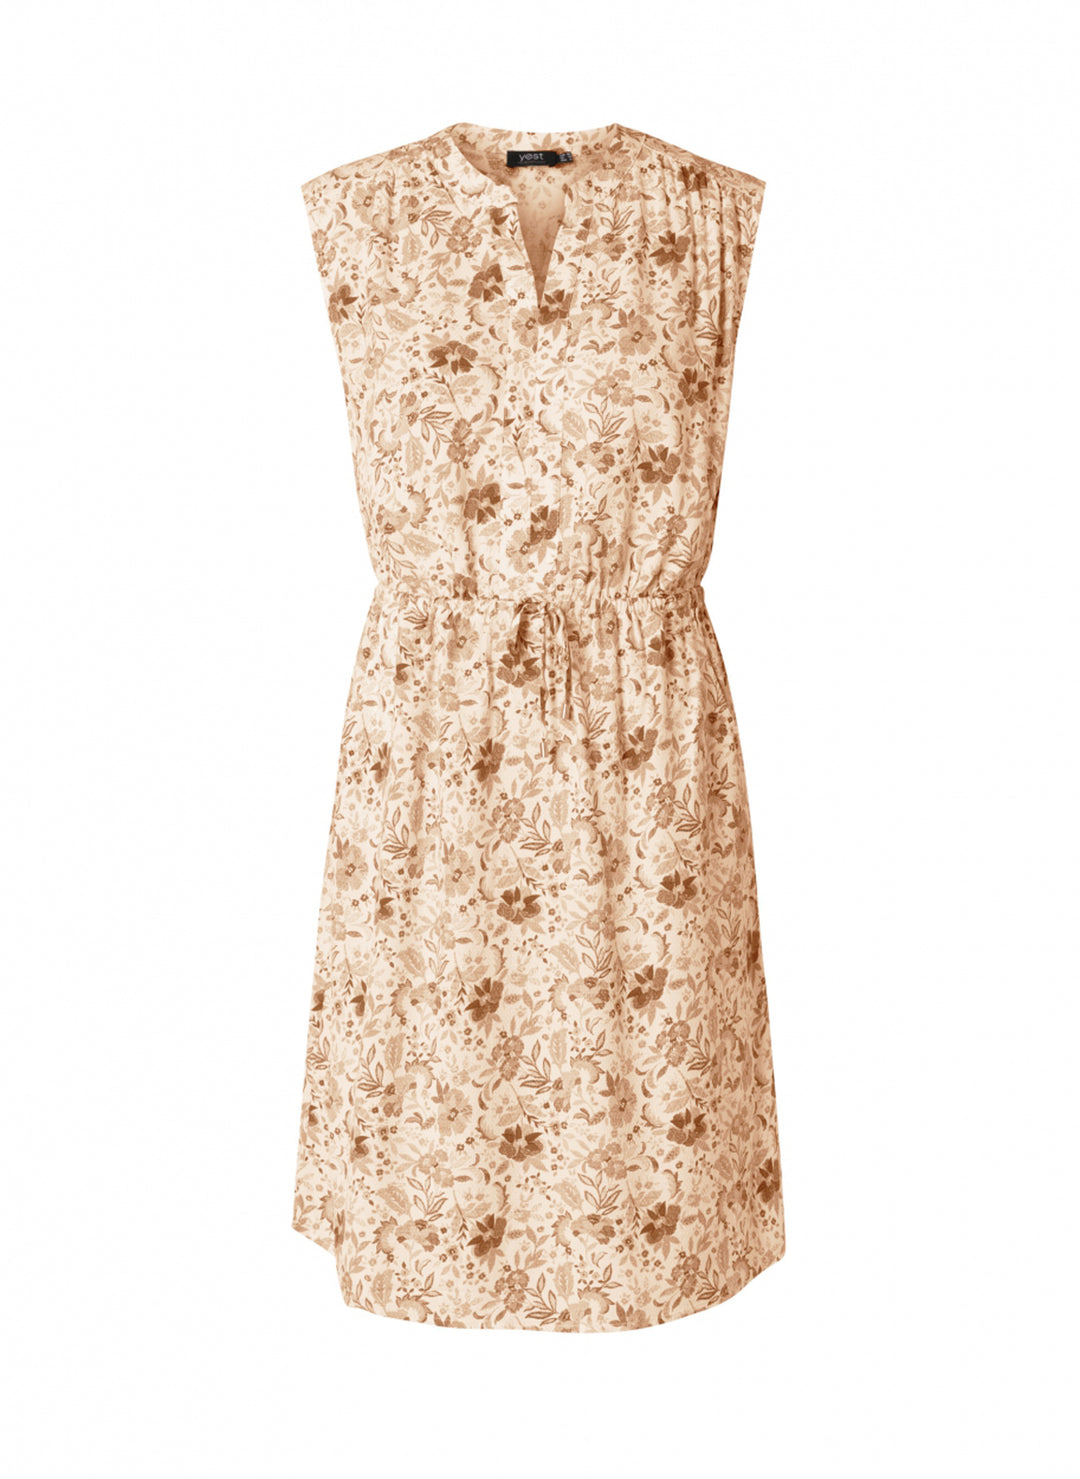 luchtige jurk met print - yesta - - grote maten - dameskleding - kledingwinkel - herent - leuven